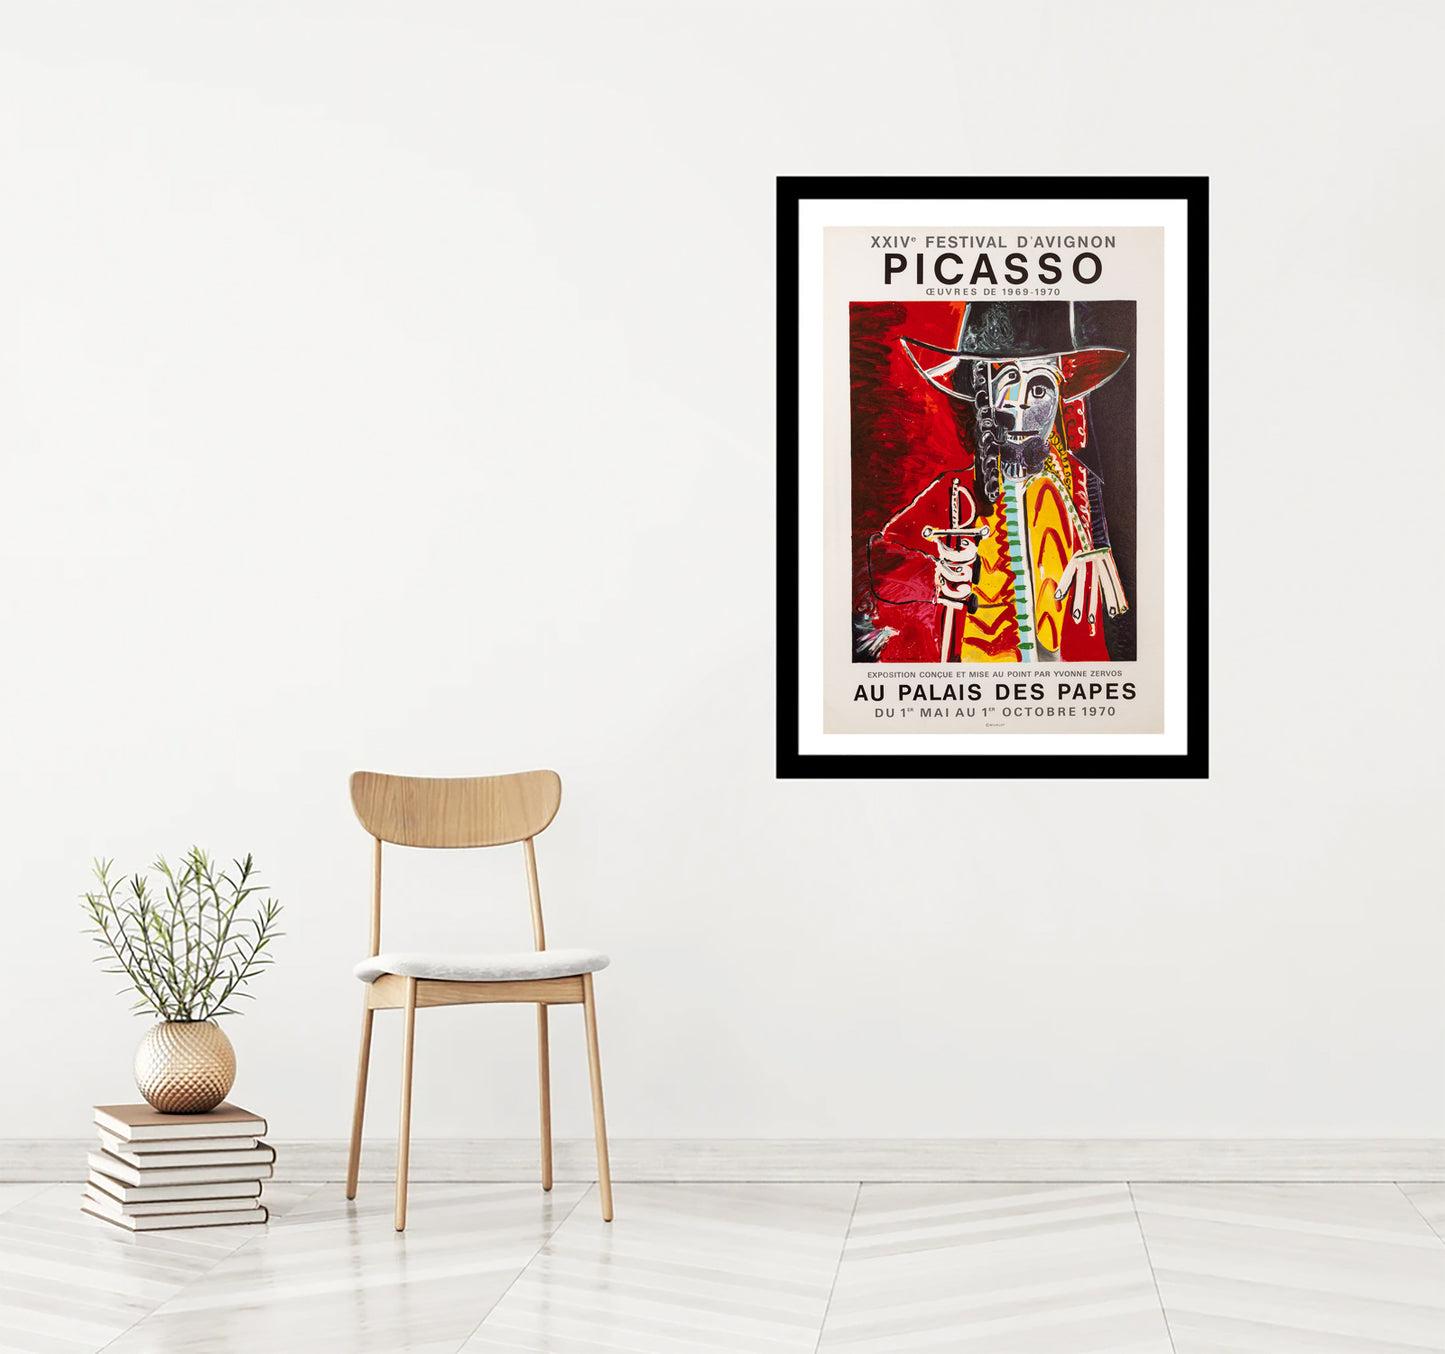 Artiste : Pablo Picasso

Médium : Affiche lithographique, 1970

Dimensions : 29.7 x 19.6 in, 75.5 x 50.5 cm

Papier pour posters classiques - Condition parfaite A+

Cette affiche lithographique destinée à promouvoir le 24e festival d'Avignon